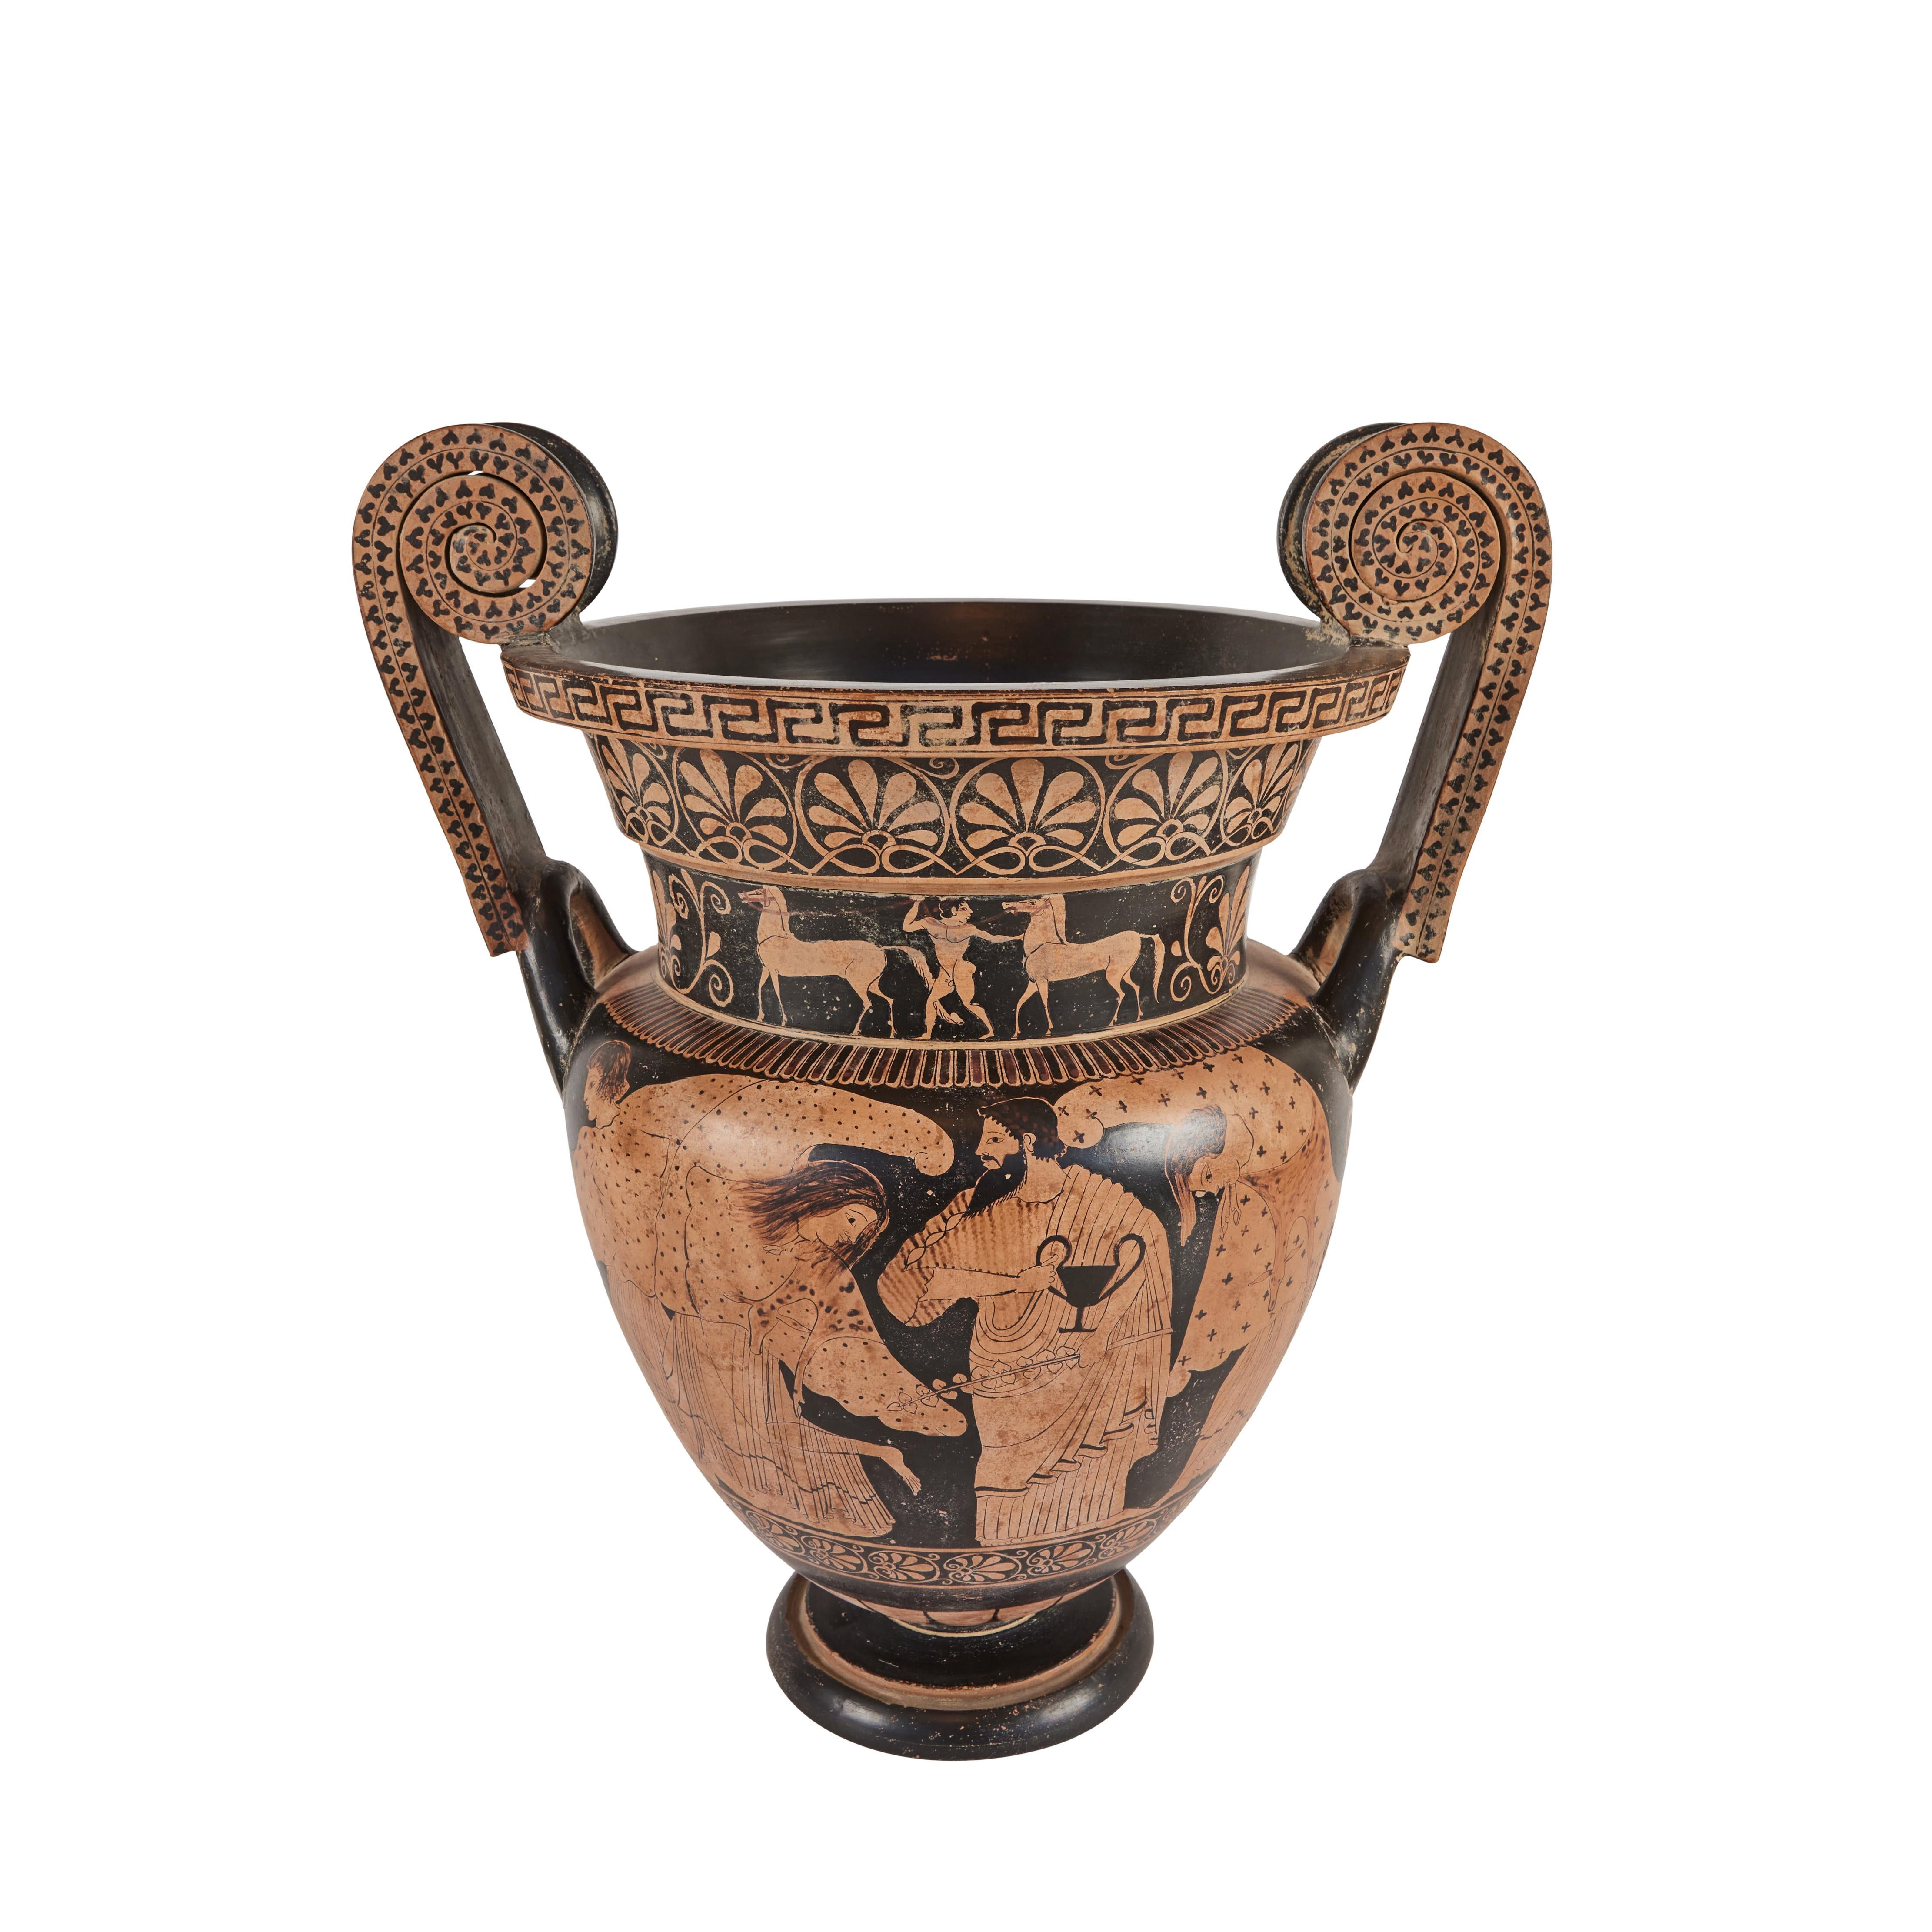 Handbemalte, kraterförmige Grand-Tour-Terrakotta-Vase mit Figuren und Pferden. Dieses Stück stammt aus dem späten 19. und frühen 20. Jahrhundert.